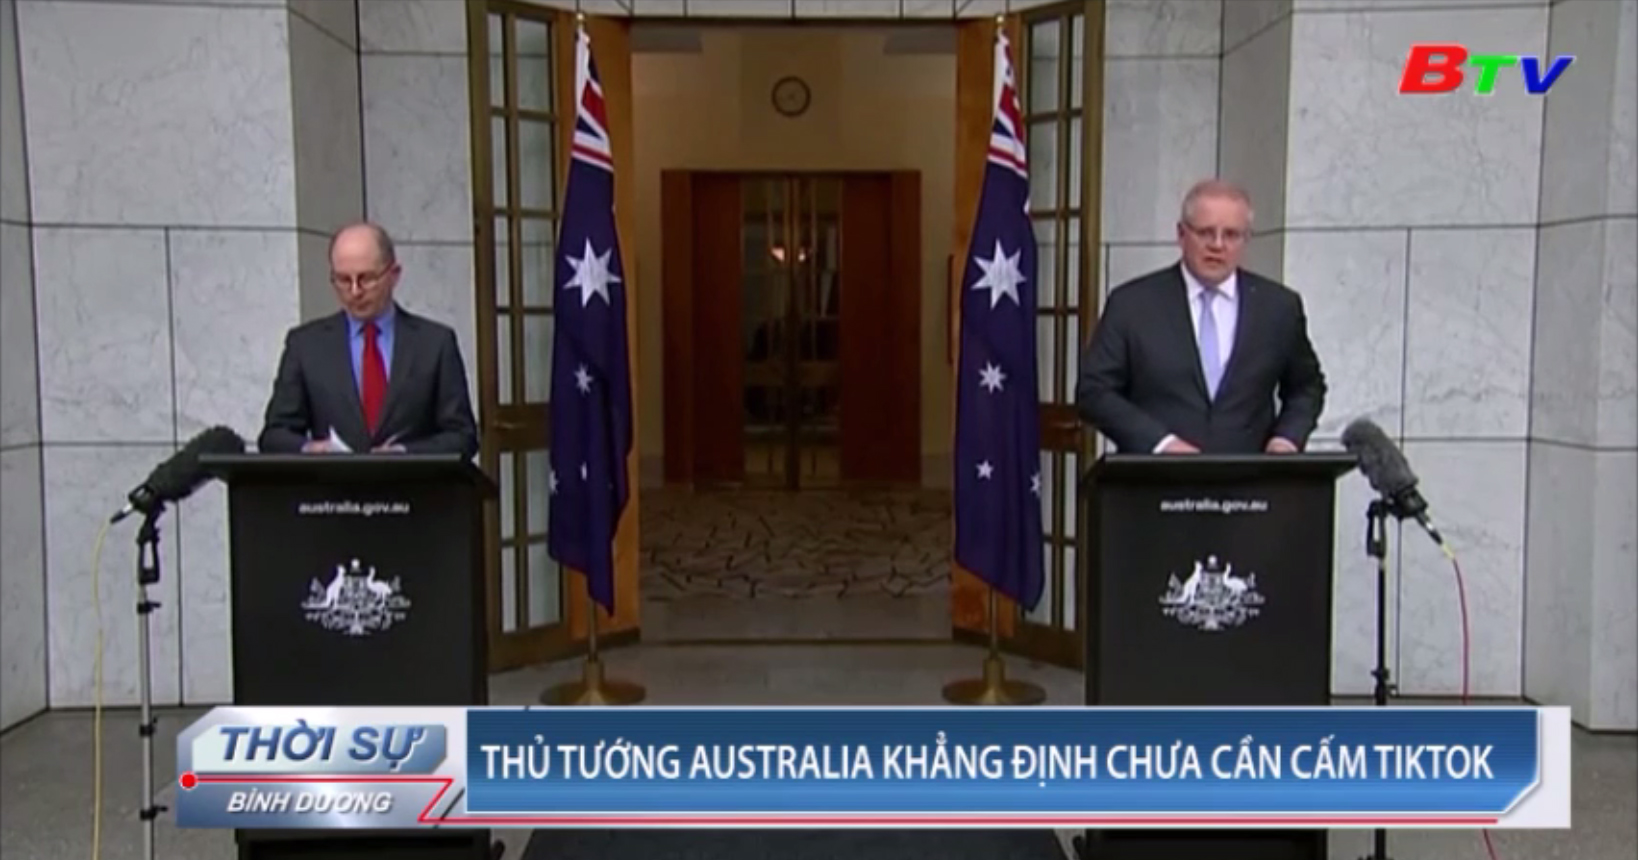 Thủ tướng Australia khẳng định chưa cần cấm TikTok